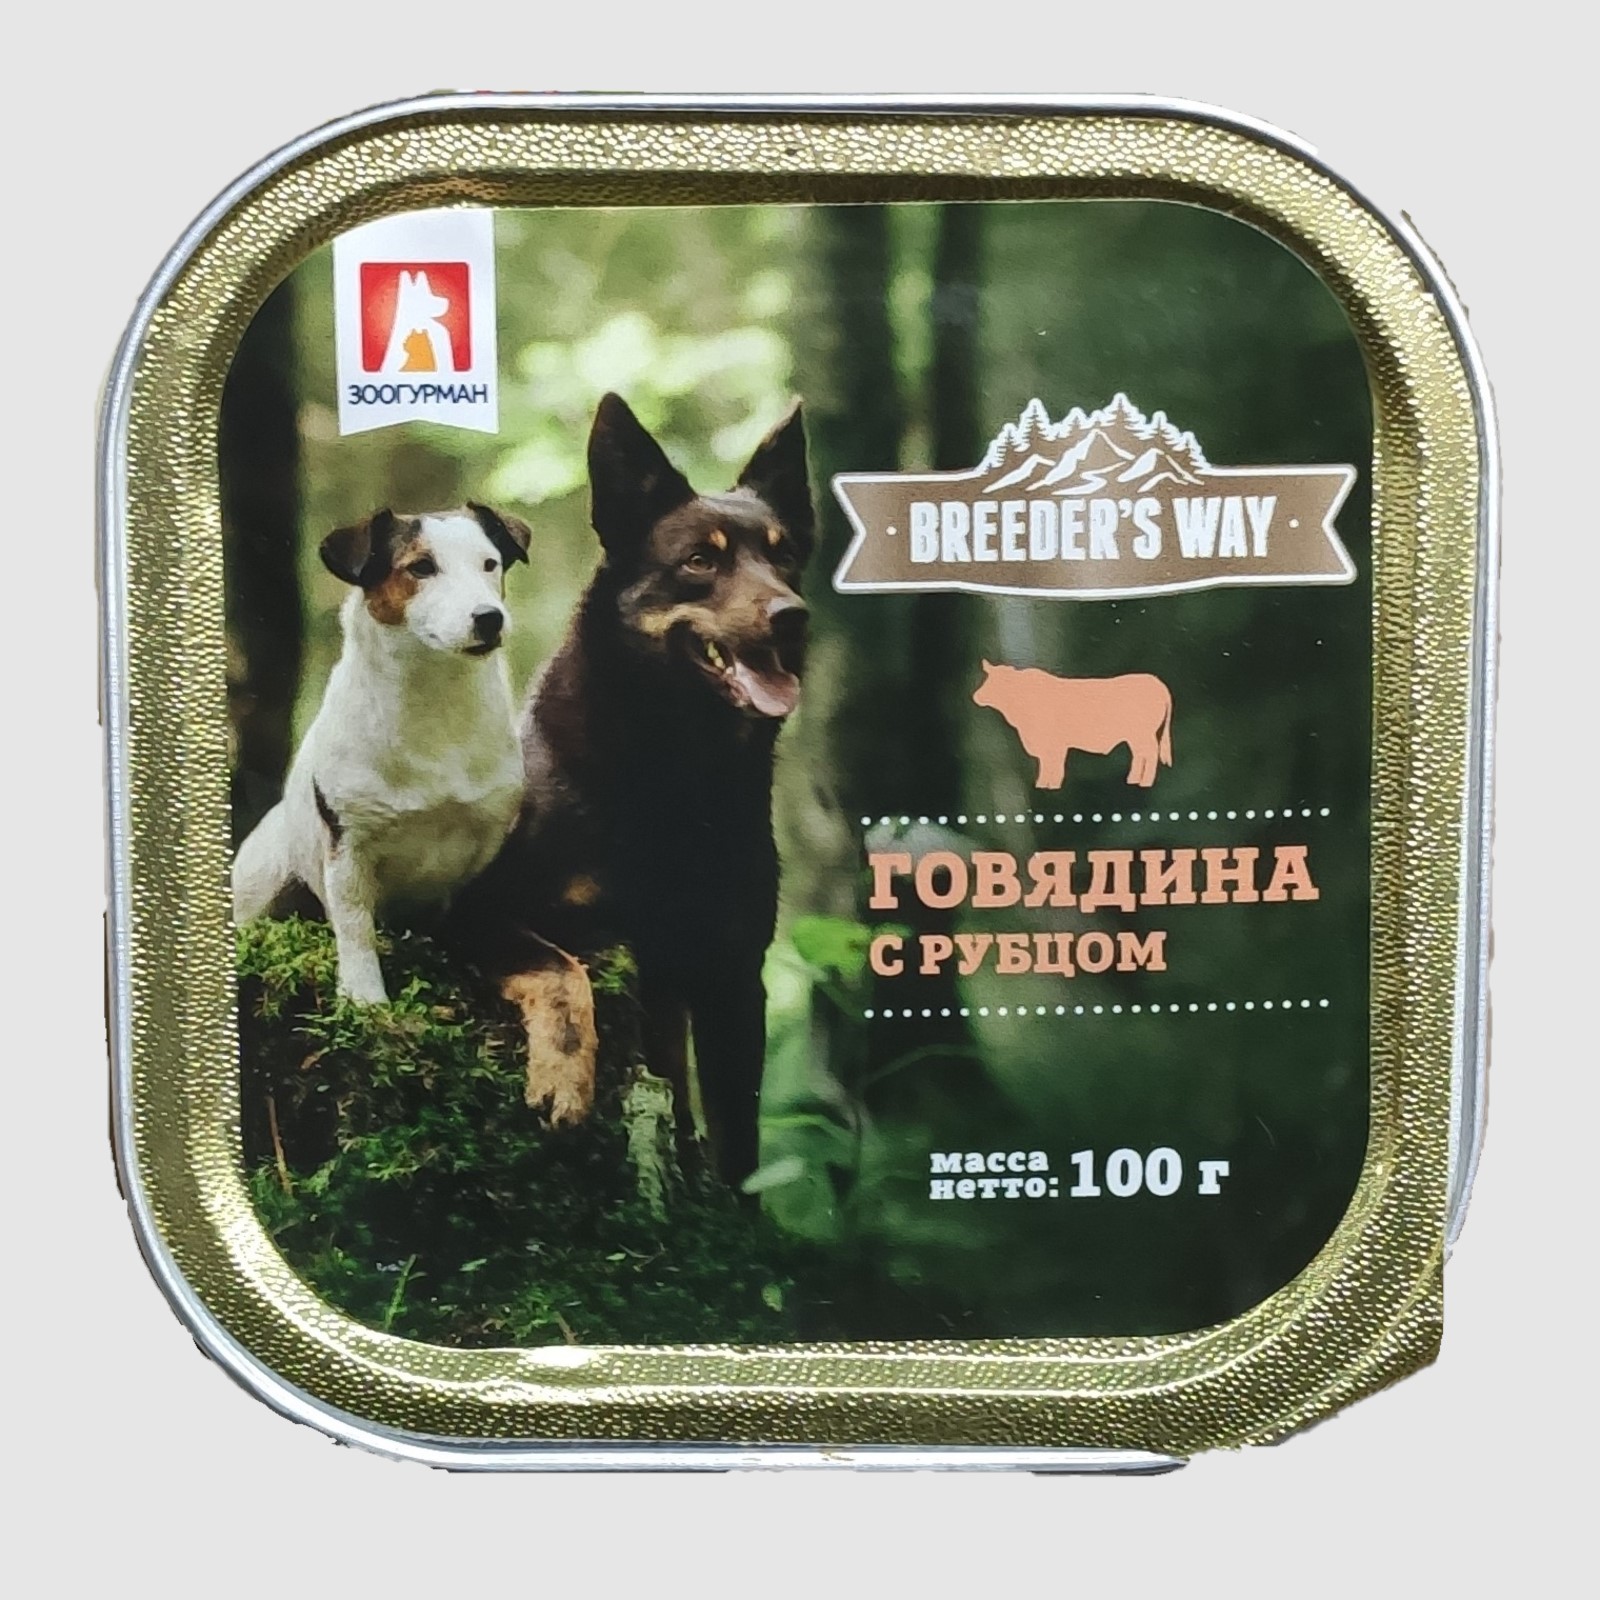 Breeder's way консервы (ламистер) для собак с говядиной и рубцом 100г фото, цены, купить